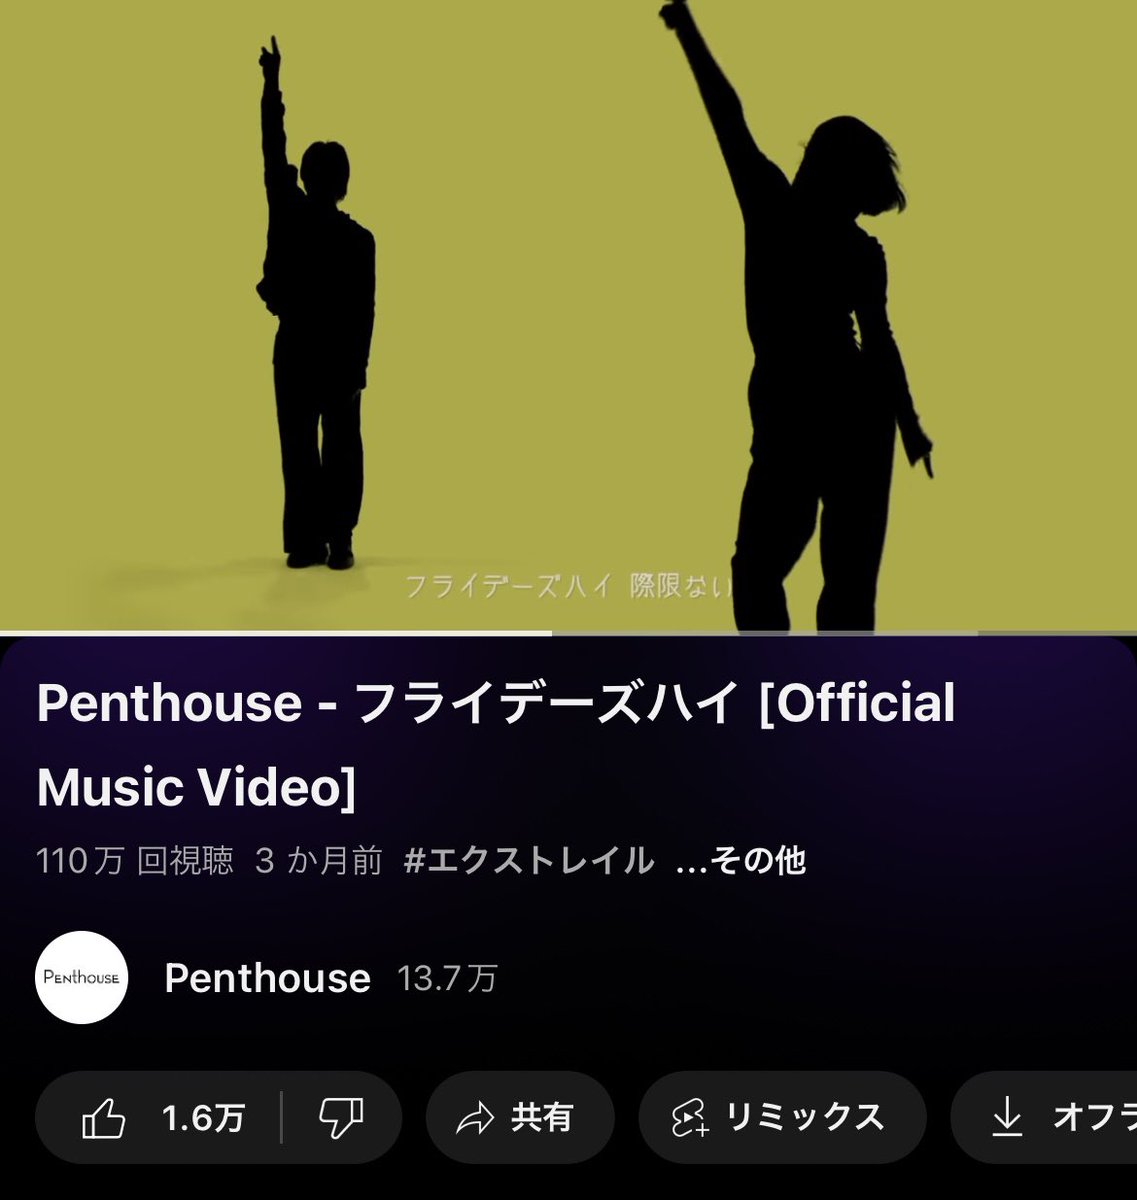 #YouTube にて 「フライデーズハイ」MV再生数が 1,100,000回到達！ 金曜日以外もまだまだ上がっていきましょう💁🏻‍♀️ youtu.be/0LOBlhvPtkA?si… #Penthouse